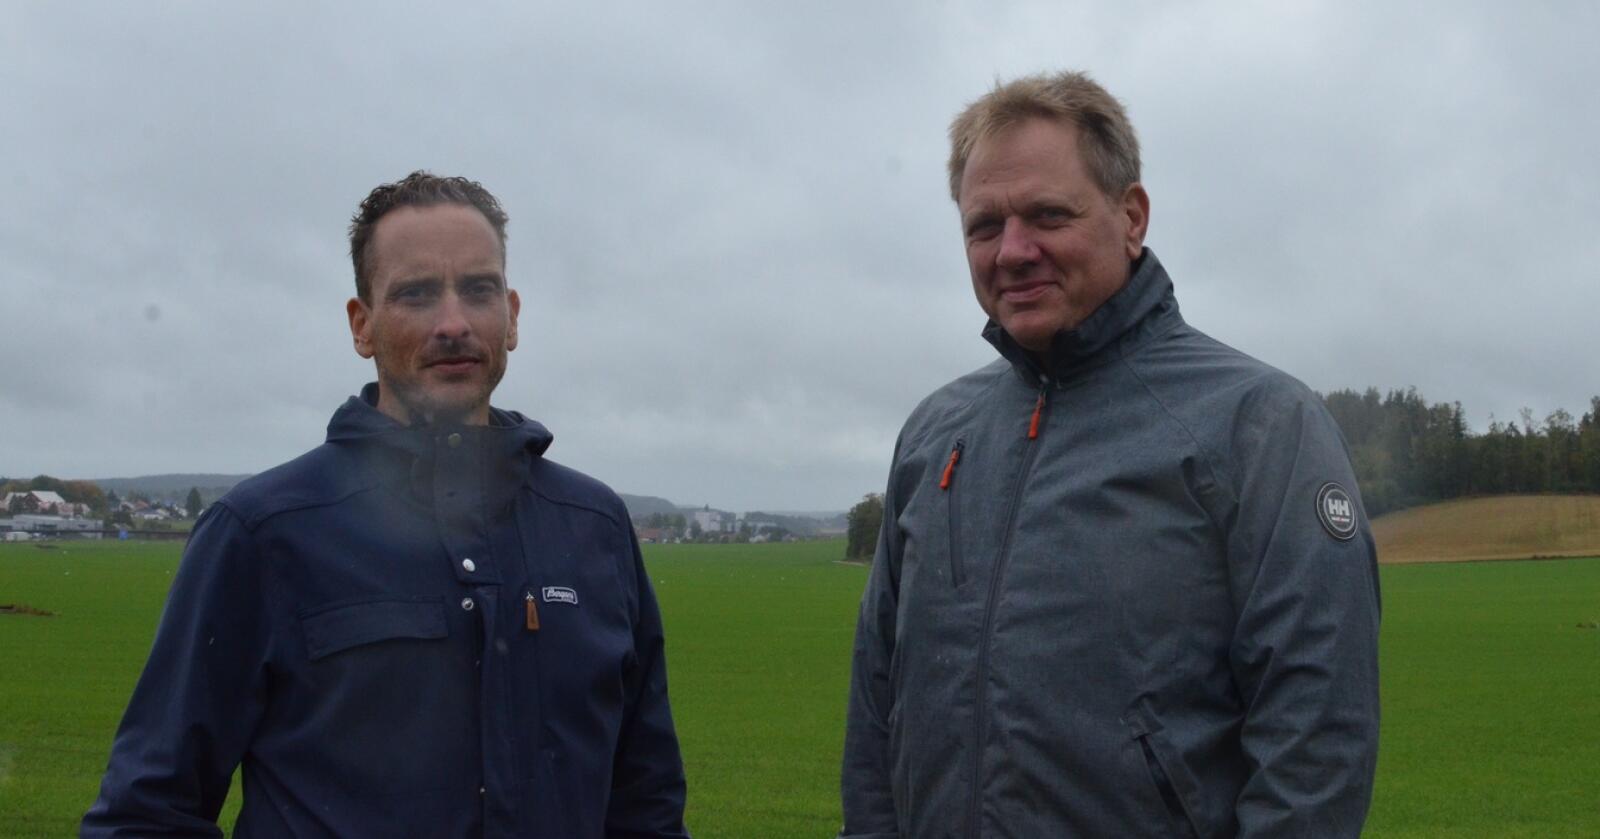 Ole-Kristian Bergerud og Jens Thori Kogstad, fylkesledere i henholdsvis Østfold og Akershus Bondelag, er bekymret for rigide regler om høstpløying. Foto: Stian Eide